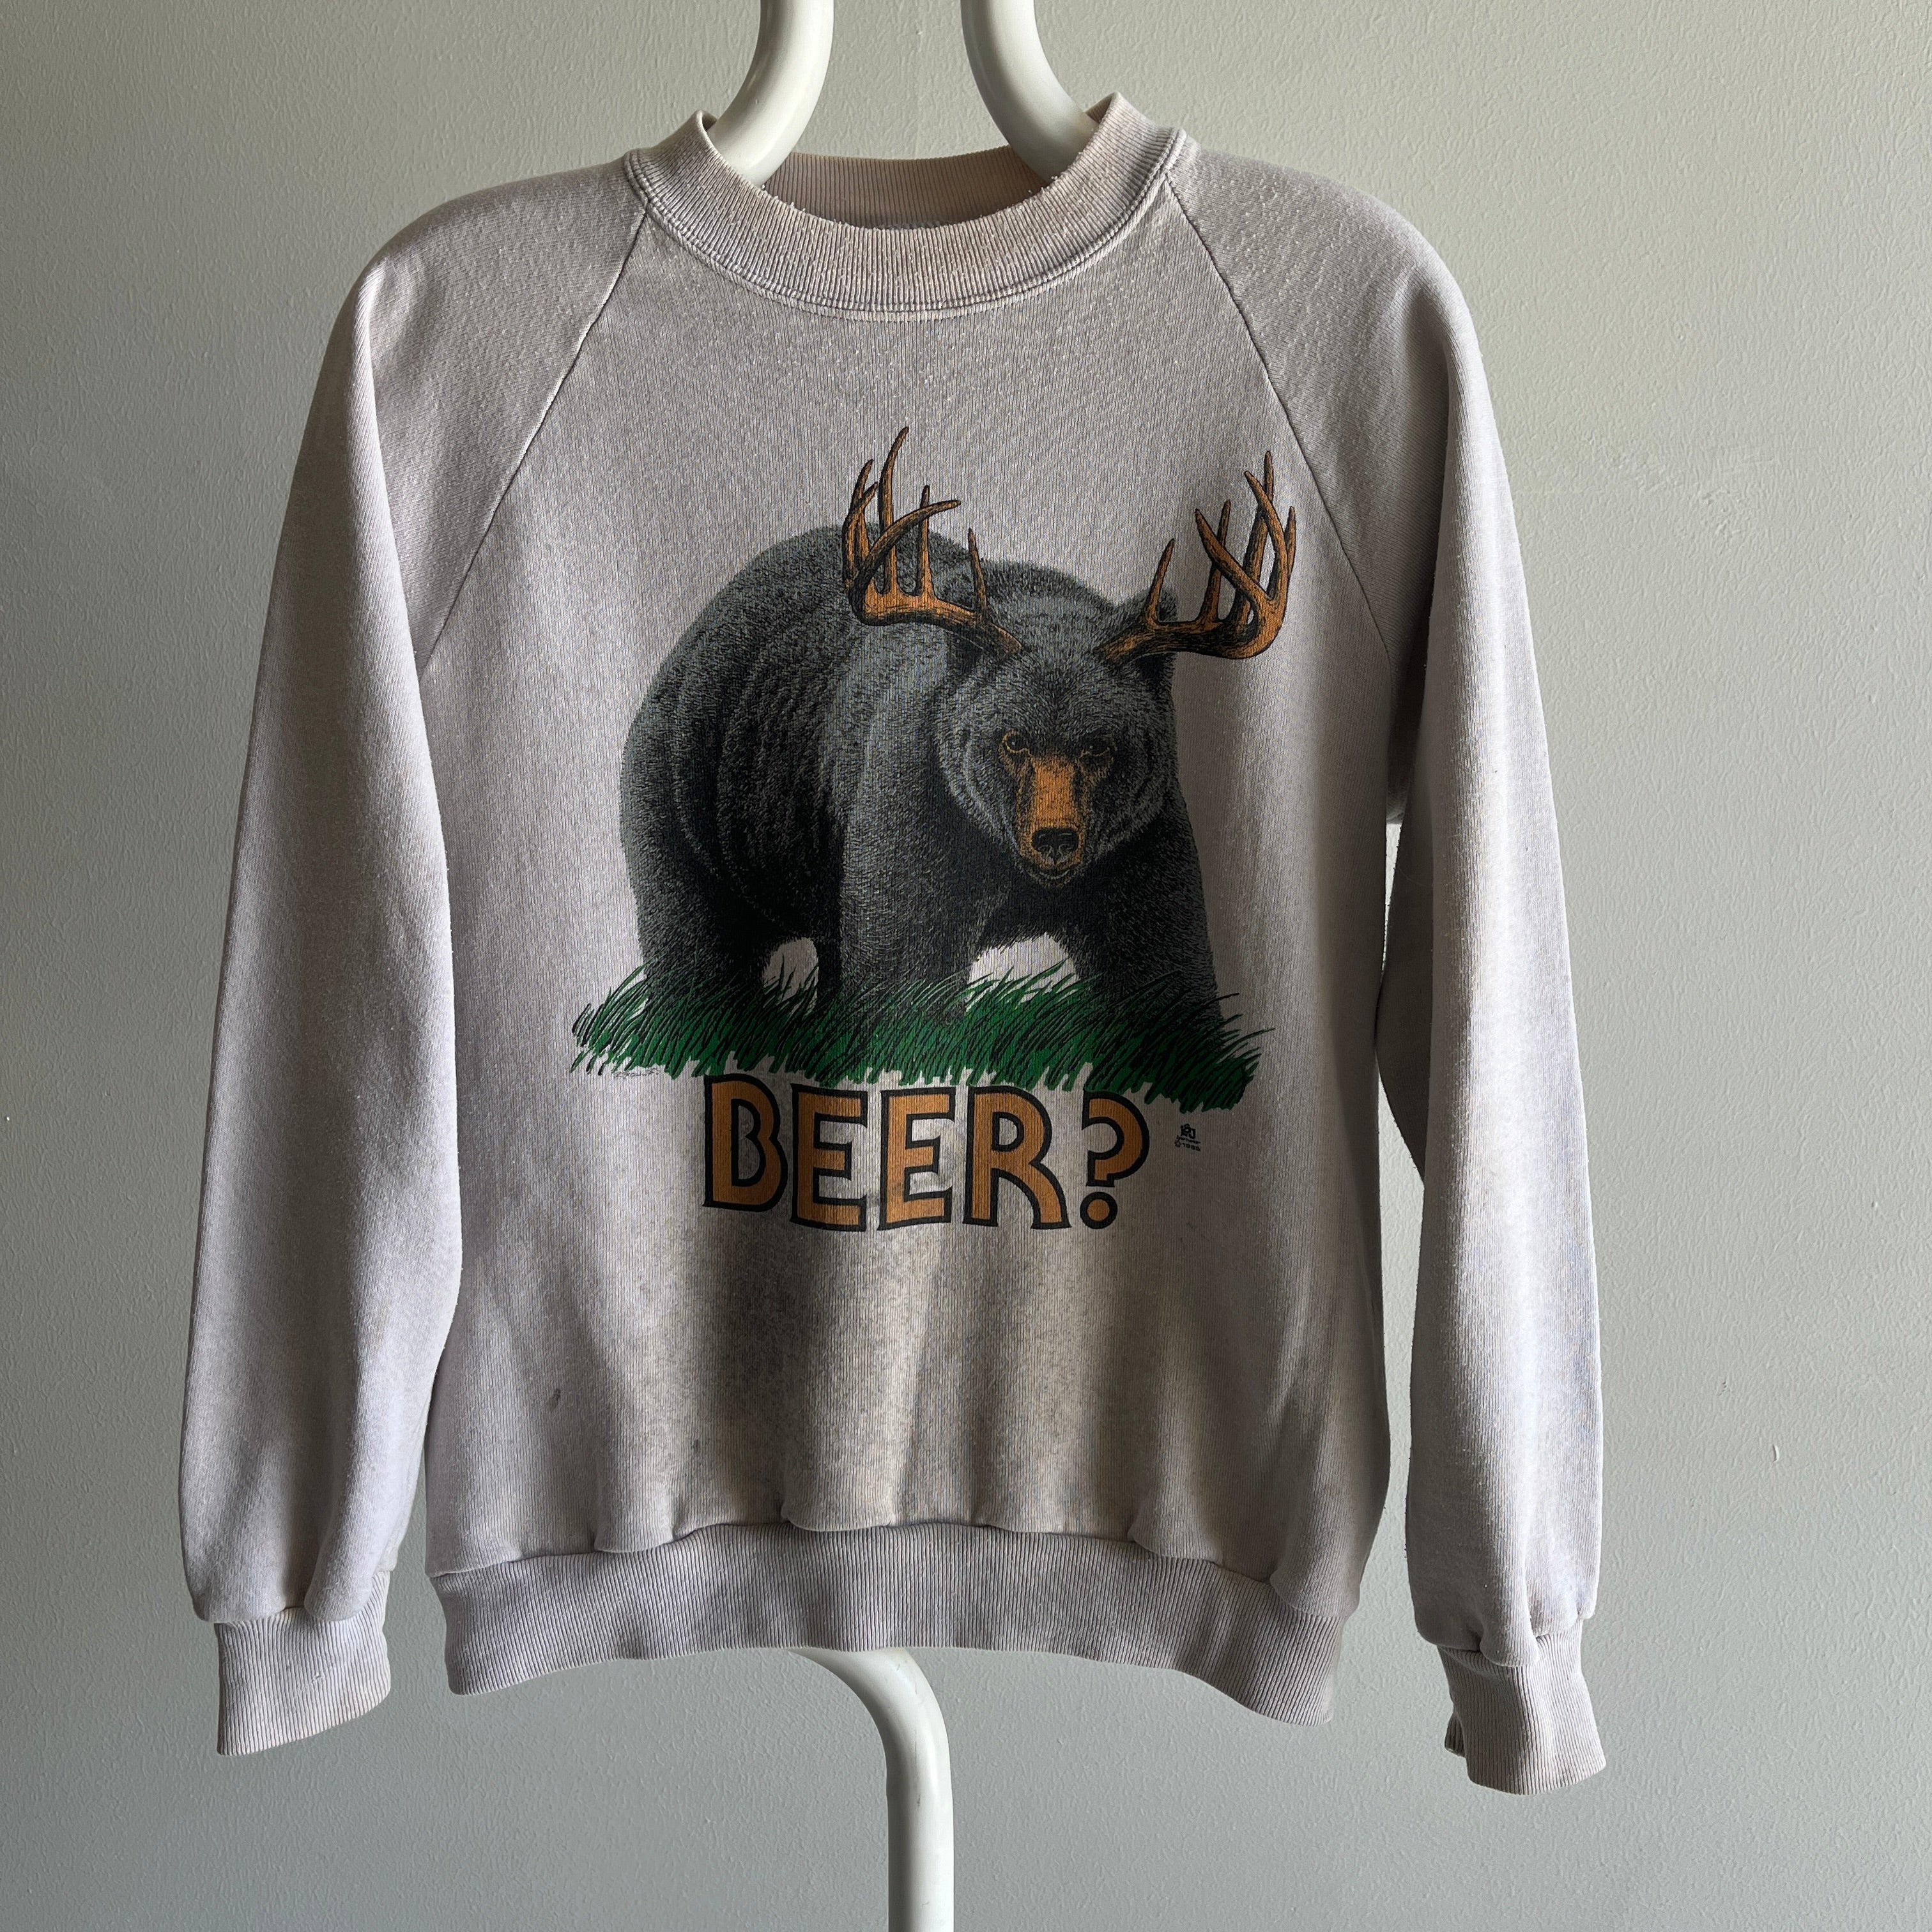 1985 Disgustingly Stained Beer Bear Sweatshirt - Je parle de coloration de niveau supérieur